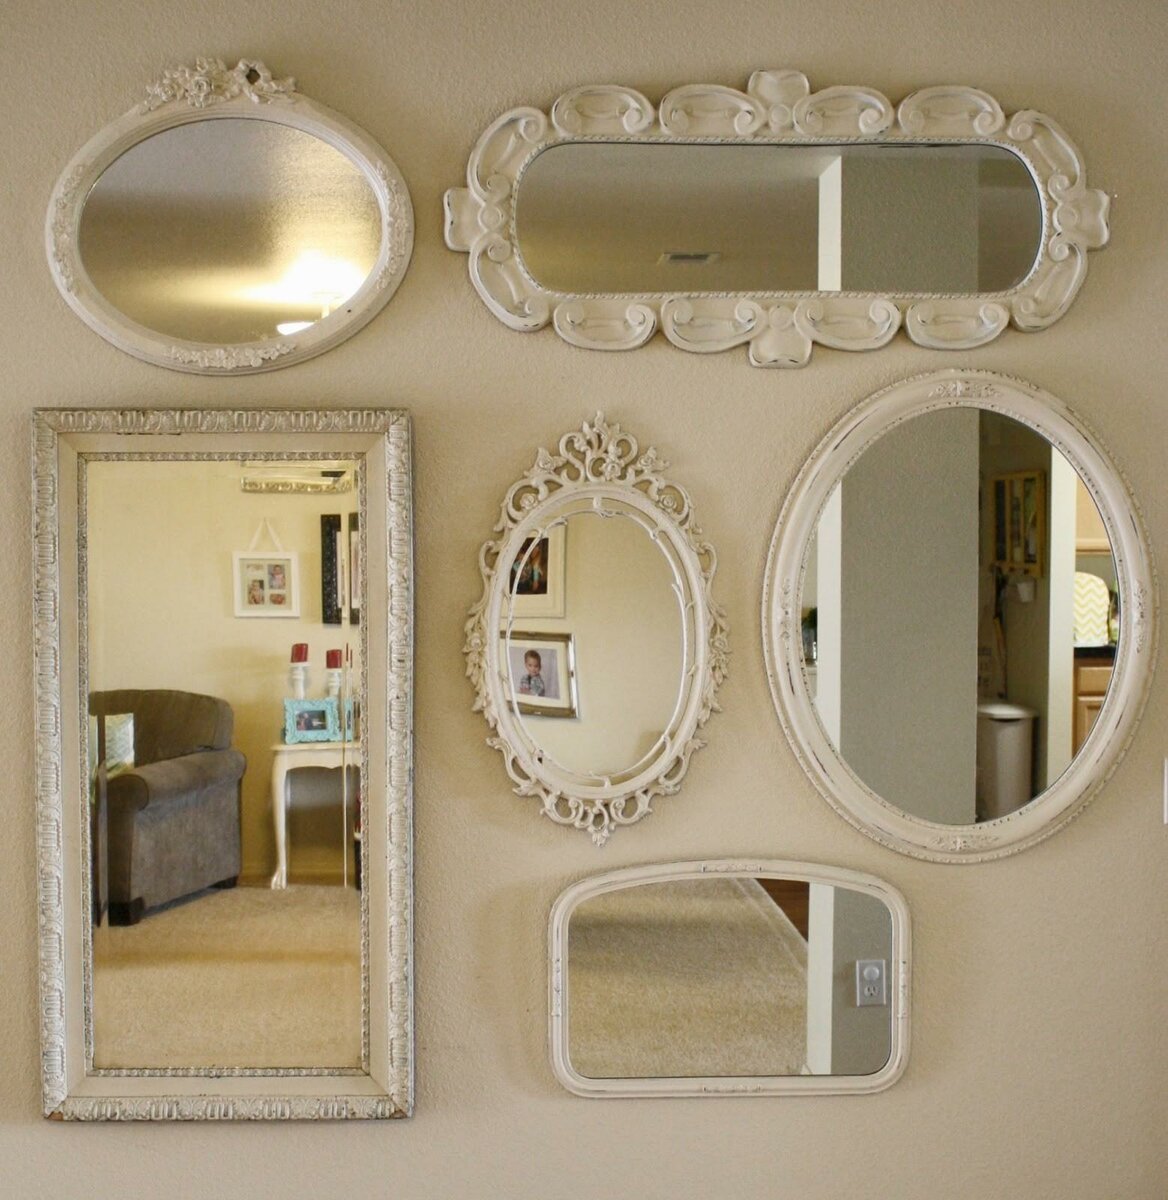 7 способов использования зеркал в интерьере комнату, зеркала, стены, более, зеркало, поверхности, потолок, сделать, будет, больше, просторнее, света, комнате, помощи, очень, можно, поставить, вместо, зеркальные, давно